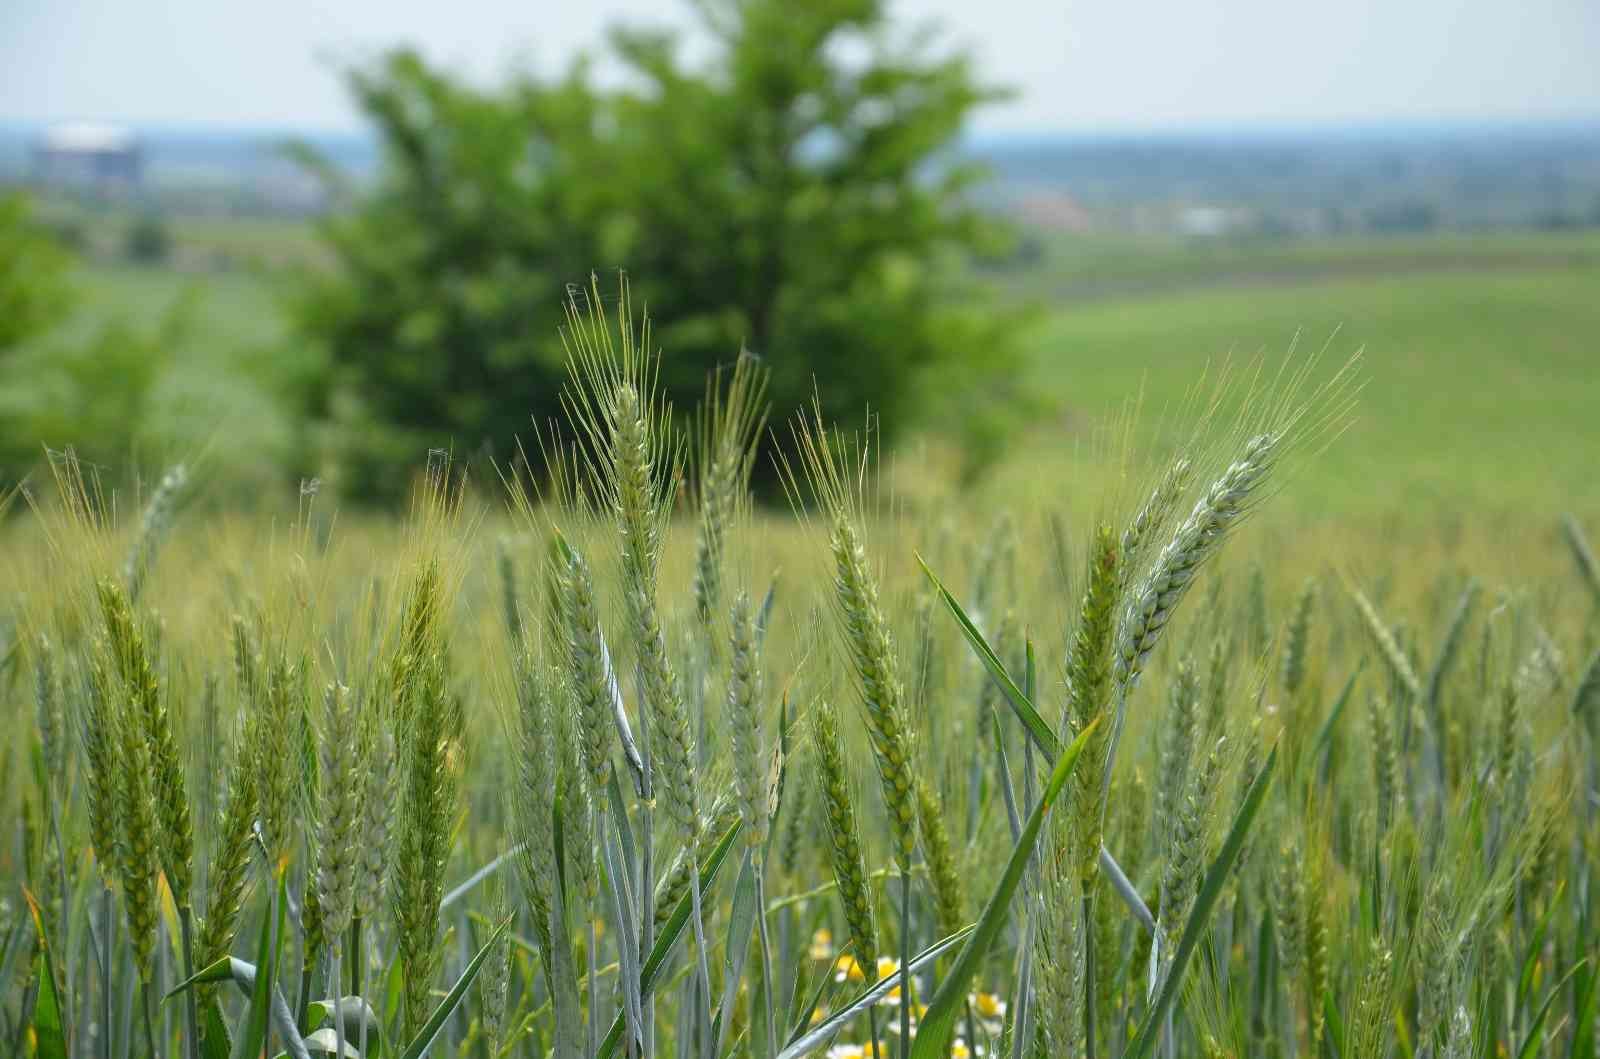 Ulusal Hububat Konseyi’nin bu yılki buğday rekoltesine ilişkin raporuna göre, Türkiye’nin 2022 yılı buğday rekoltesinin geçen yıla göre 17 milyon ...